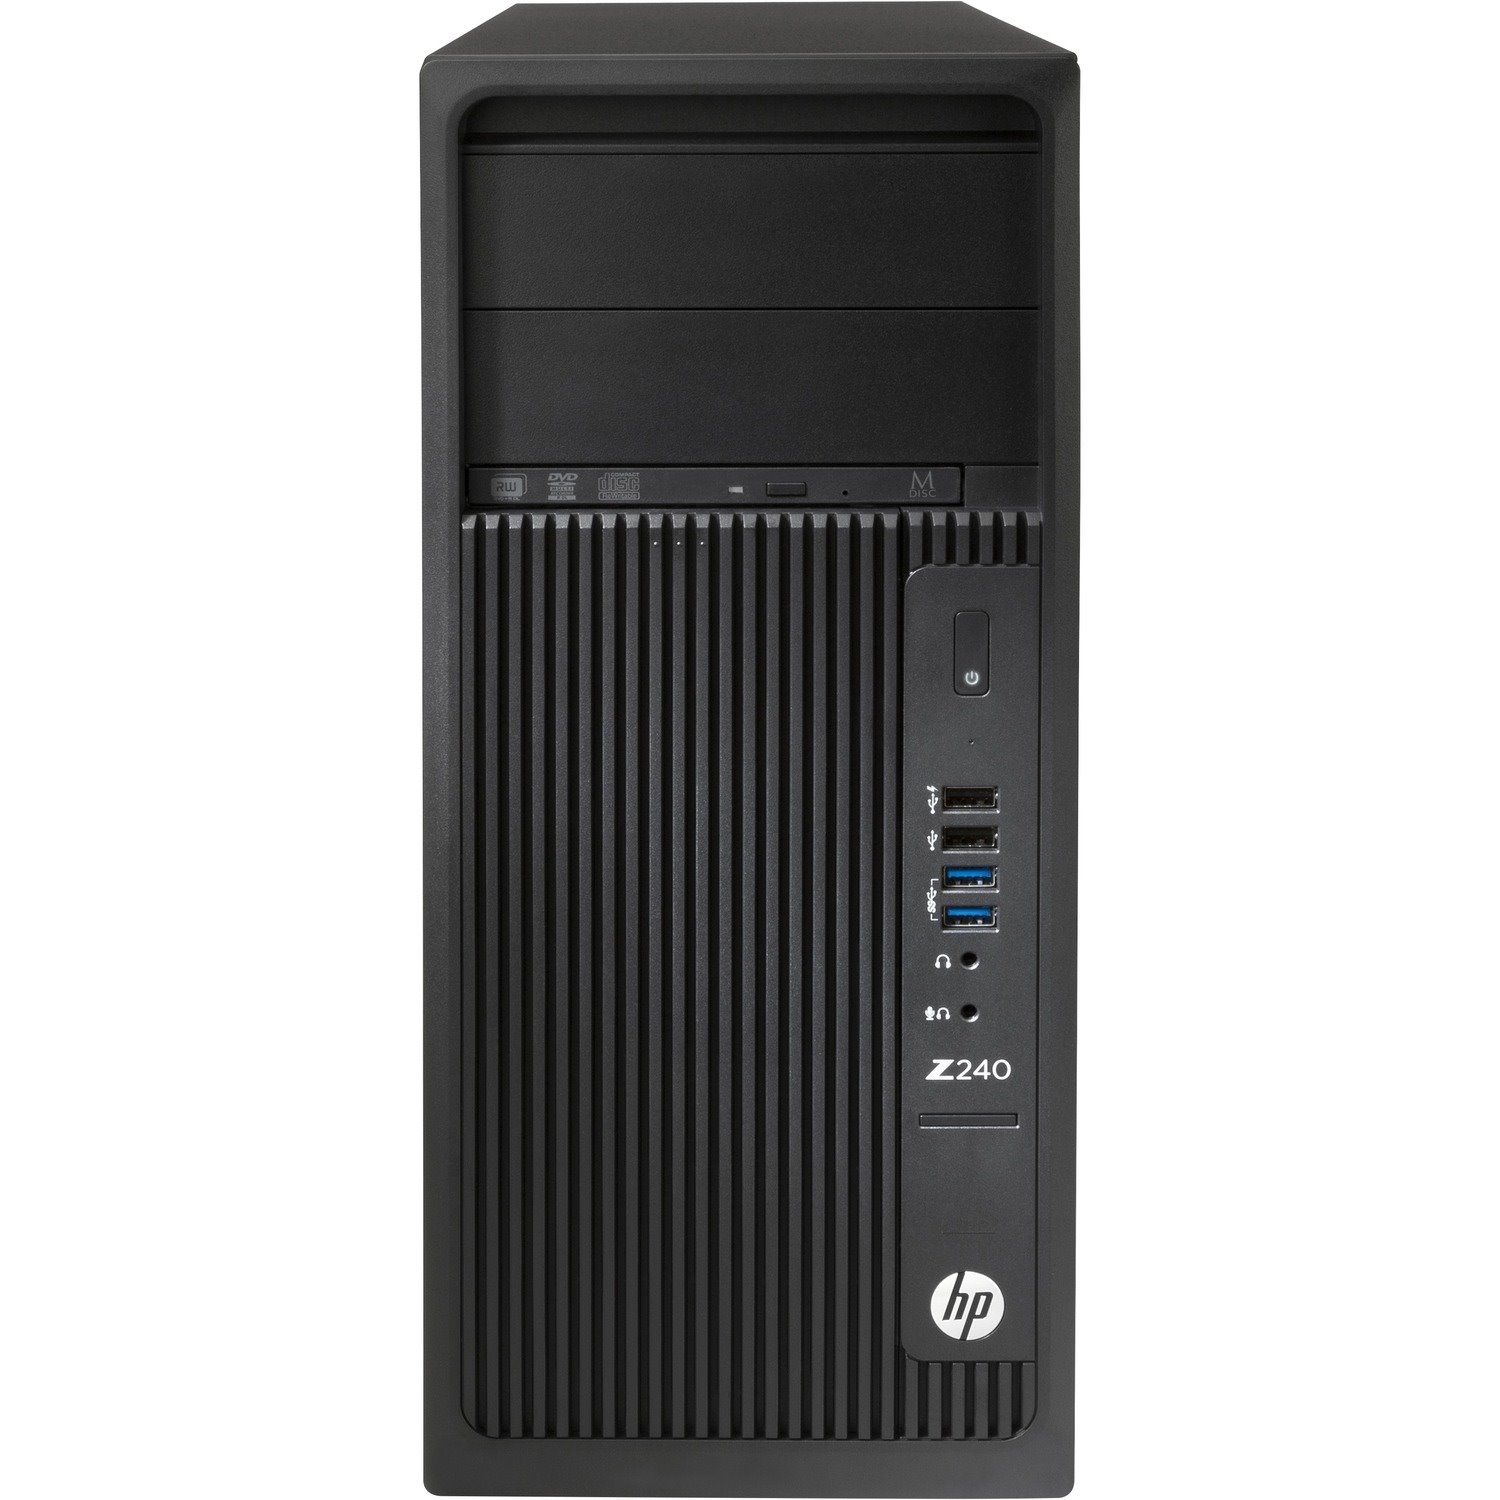 HP Z240 Workstation - 1 x Intel Core i7 Quad-core (4 Core) i7-6700 6th Gen 3.40 GHz - 8 GB DDR4 SDRAM RAM - 1 TB HDD - Mini-tower - Black